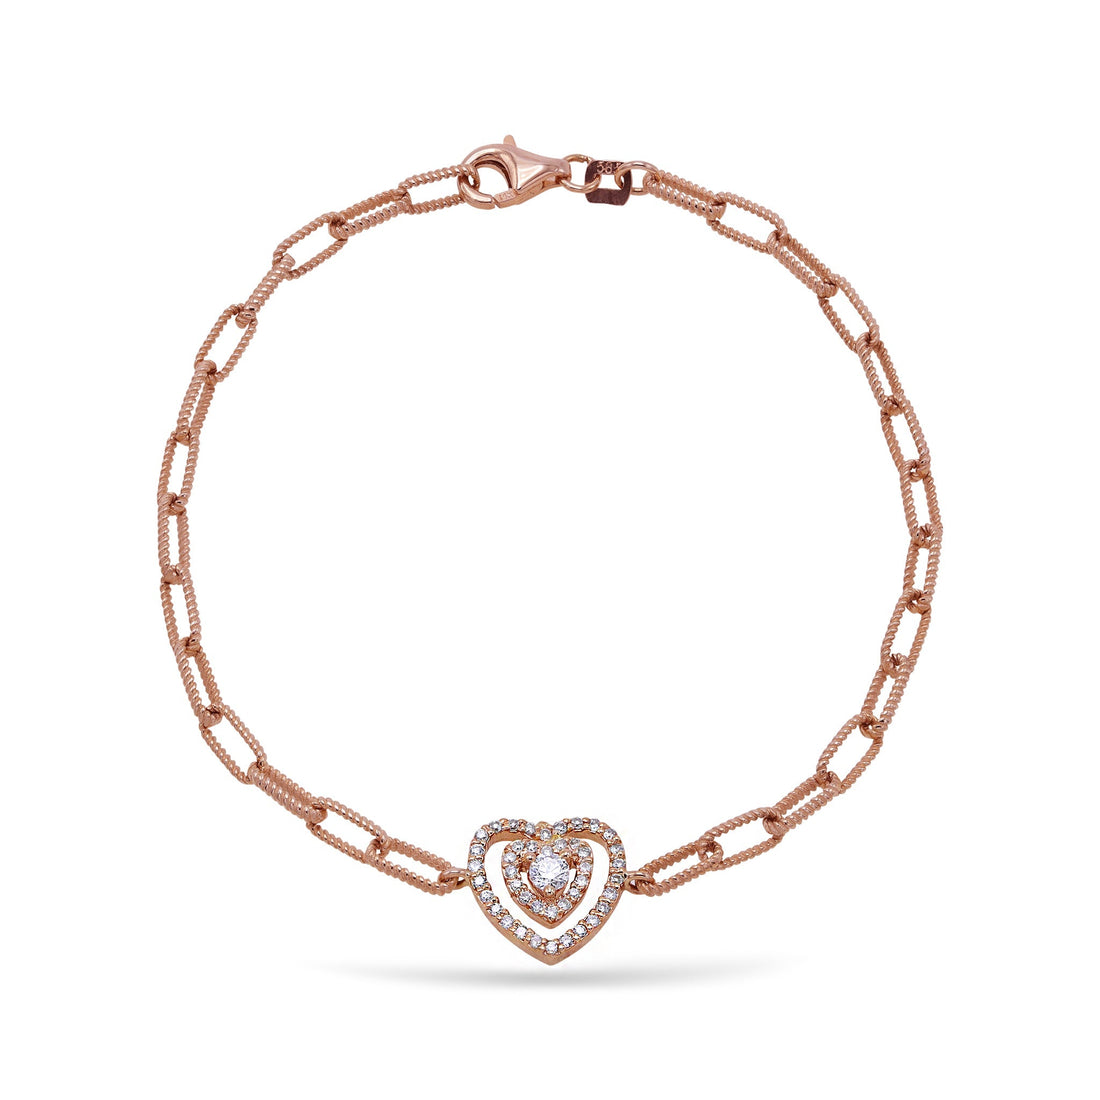 Jewelry Hearts | Diamond Bracelet | 0.39 Cts. | 18K Gold - Rose / 18 cm / Diamonds - bracelet Zengoda Shop online